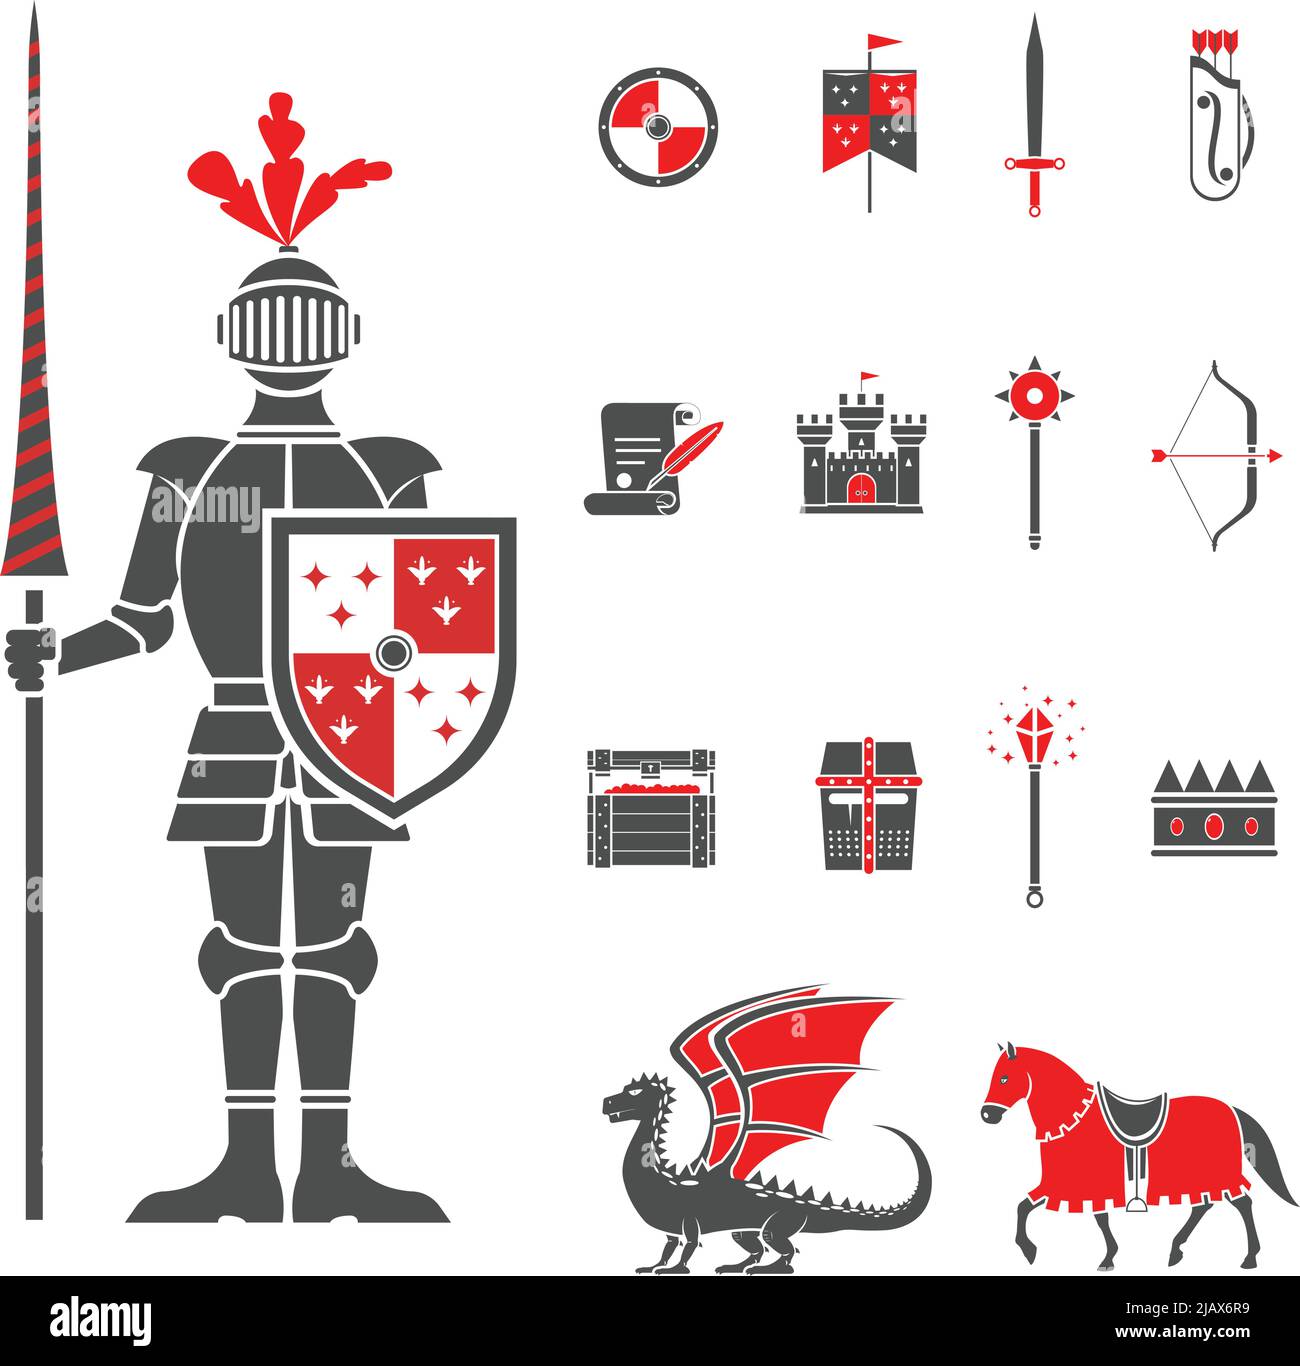 Cavaliere castello medievale con lance e scudo icone set e drago rosso nero astratto illustrazione vettoriale isolato Illustrazione Vettoriale